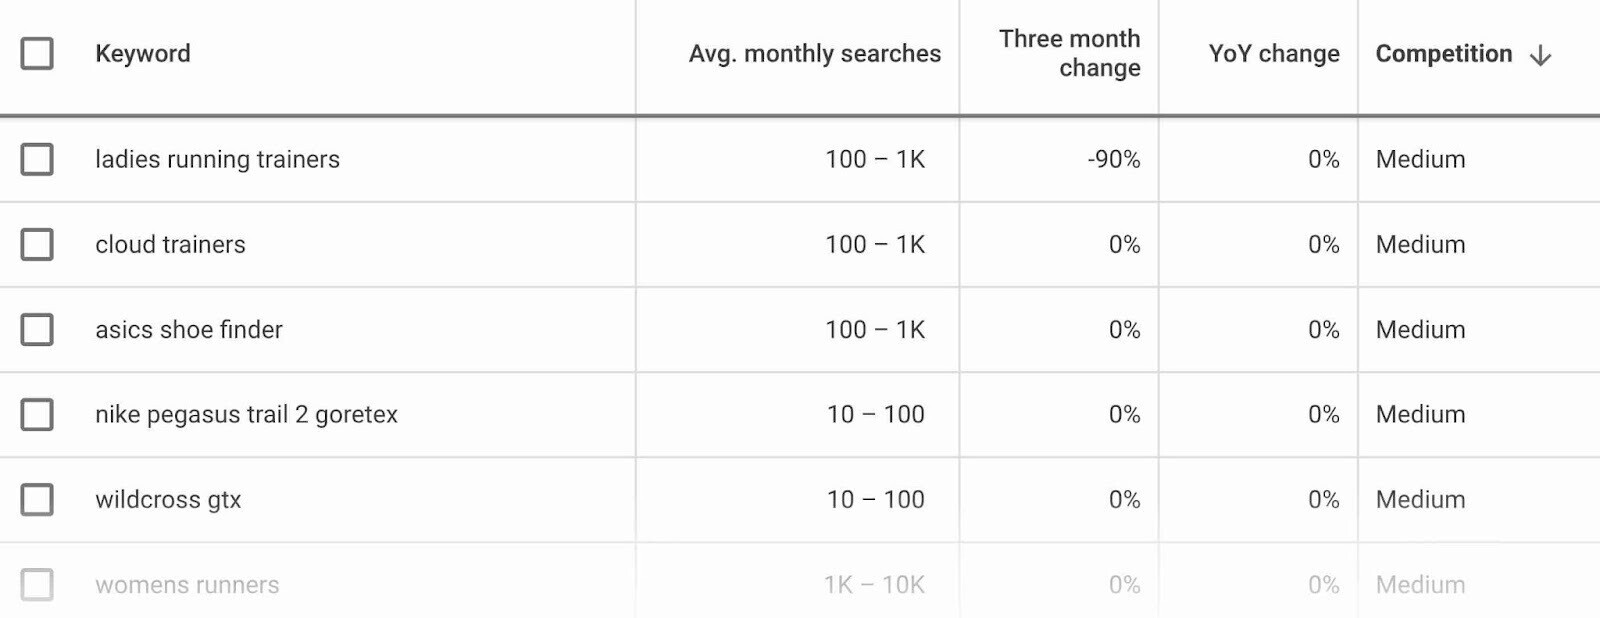 Classifique sua lista pela média de pesquisas mensais e segmente palavras-chave com baixa concorrência